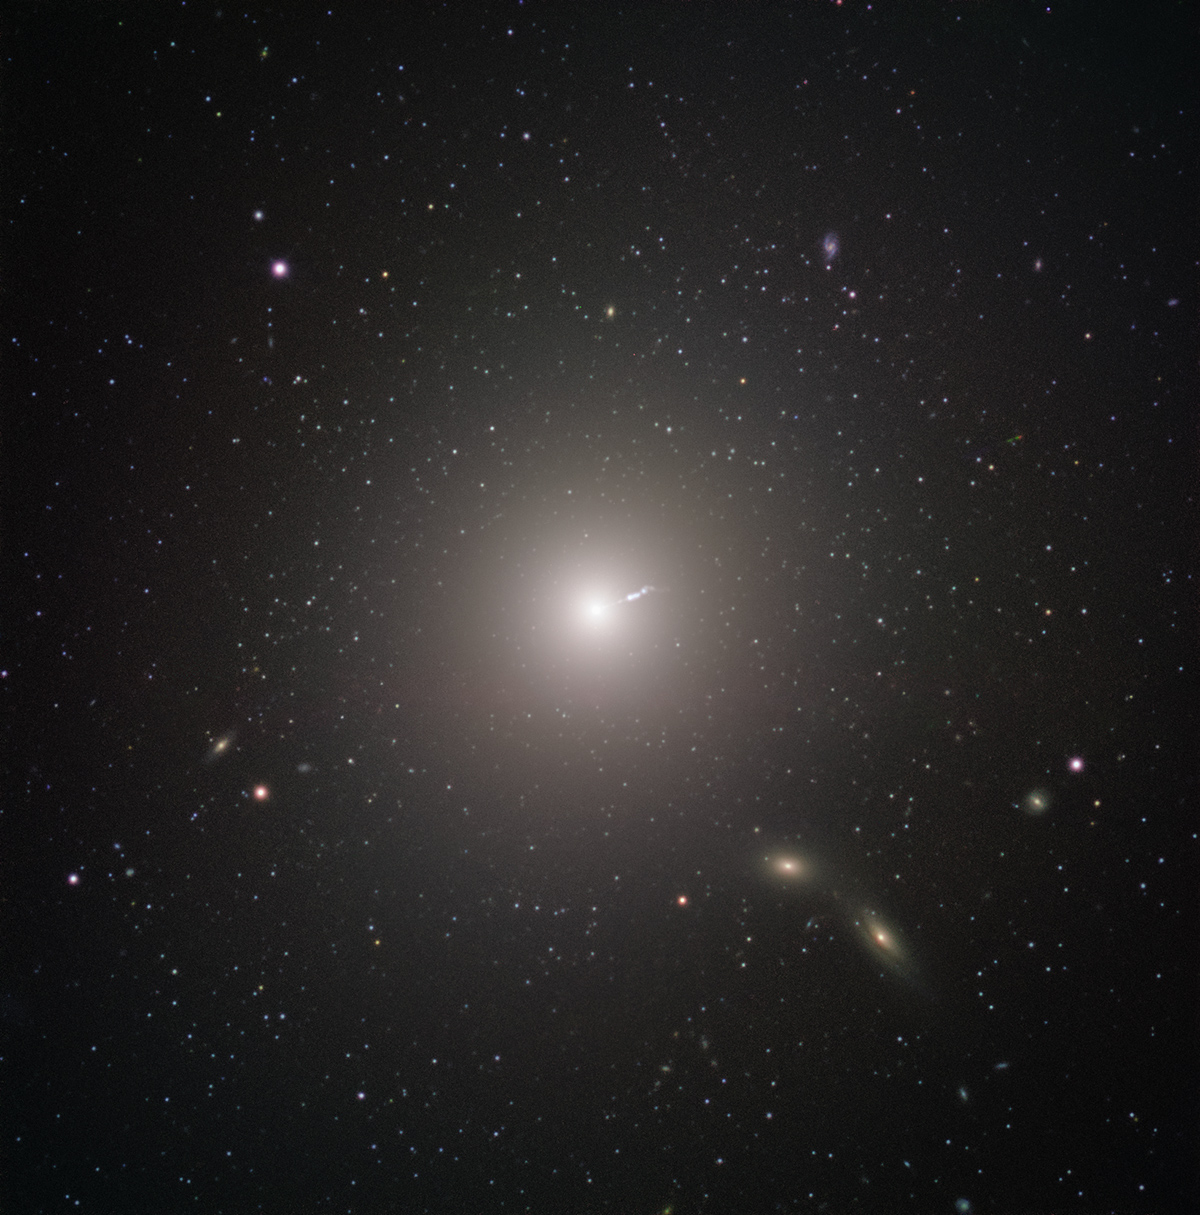 <p>Messier 87 (M87) es una enorme galaxia elíptica ubicada a unos 55 millones de años luz de la Tierra, visible en la constelación de Virgo. Fue descubierta por Charles Messier en 1781, pero no fue identificado como una galaxia hasta el siglo XX. Se encuentra entre las galaxias más grandes del Universo local: posee el doble de masa de nuestra propia galaxia, la Vía Láctea, y contiene hasta diez veces más estrellas. Además de su tamaño original, M87 tiene algunas características muy únicas. Por ejemplo, contiene un número inusualmente alto de cúmulos globulares: mientras nuestra Vía Láctea contiene menos de 200, M87 tiene aproximadamente 12.000, que según algunos científicos teorizan habría recolectado de sus vecinos más pequeños.<br />
Al igual que con todas las demás galaxias grandes, M87 tiene un agujero negro supermasivo en su centro. La masa del agujero negro en el centro de una galaxia está relacionada con la masa de la galaxia en general, por lo que no debería sorprender que el agujero negro de M87 sea uno de los más masivos conocidos. El agujero negro también puede explicar una de las características más energéticas de la galaxia: un chorro de relativista de materia que se expulsa a casi la velocidad de la luz.<br />
El agujero negro fue objeto de observaciones para cambiar paradigmas por parte del Event Horizon Telescope. El EHT lo eligió como el objetivo de sus observaciones por dos razones. Si bien la resolución de la EHT es increíble, también tiene sus límites. En vista que los agujeros negros más masivos son también más grandes en diámetro, el agujero negro central de M87 presentaba un objetivo inusualmente grande, lo que significa que se podría obtener imágenes más fácilmente que los agujeros negros más pequeños que se encuentran más cerca. La otra razón para elegirlo fue claramente más terrenal. M87 aparece bastante cerca del ecuador celeste cuando se ve desde nuestro planeta, haciéndolo visible en la mayor parte de los hemisferios norte y sur. Esto maximizó el número de telescopios en el EHT que podían observarlo, aumentando la resolución de la imagen final.<br />
FORS2 capturó esta imagen en el Very Large Telescope de ESO como parte del programa Cosmic Gems, una iniciativa de divulgación que utiliza los telescopios de ESO para producir imágenes de objetos interesantes, intrigantes o visualmente atractivos con fines educativos y de divulgación pública. El programa utiliza el tiempo de telescopio que no se puede usar para las observaciones científicas, y produce imágenes impresionantes de algunos de los objetos más sorprendentes en el cielo nocturno. En caso de que los datos recopilados puedan ser útiles para futuros propósitos científicos, estas observaciones se guardan y se ponen a disposición de los astrónomos a través del ESO Science Archive. Crédito: ESO</p>
